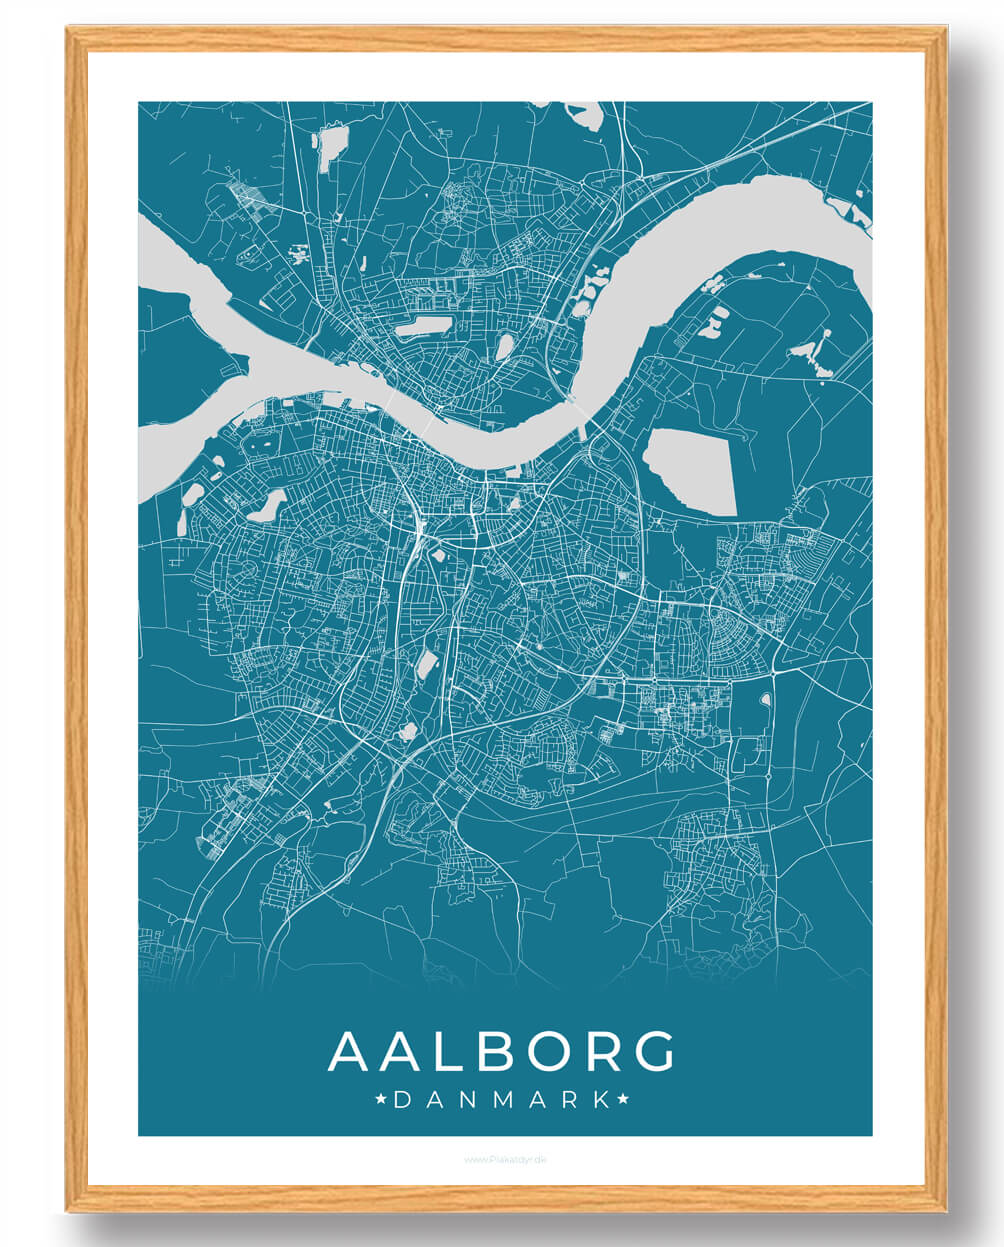 Aalborg plakat - blå